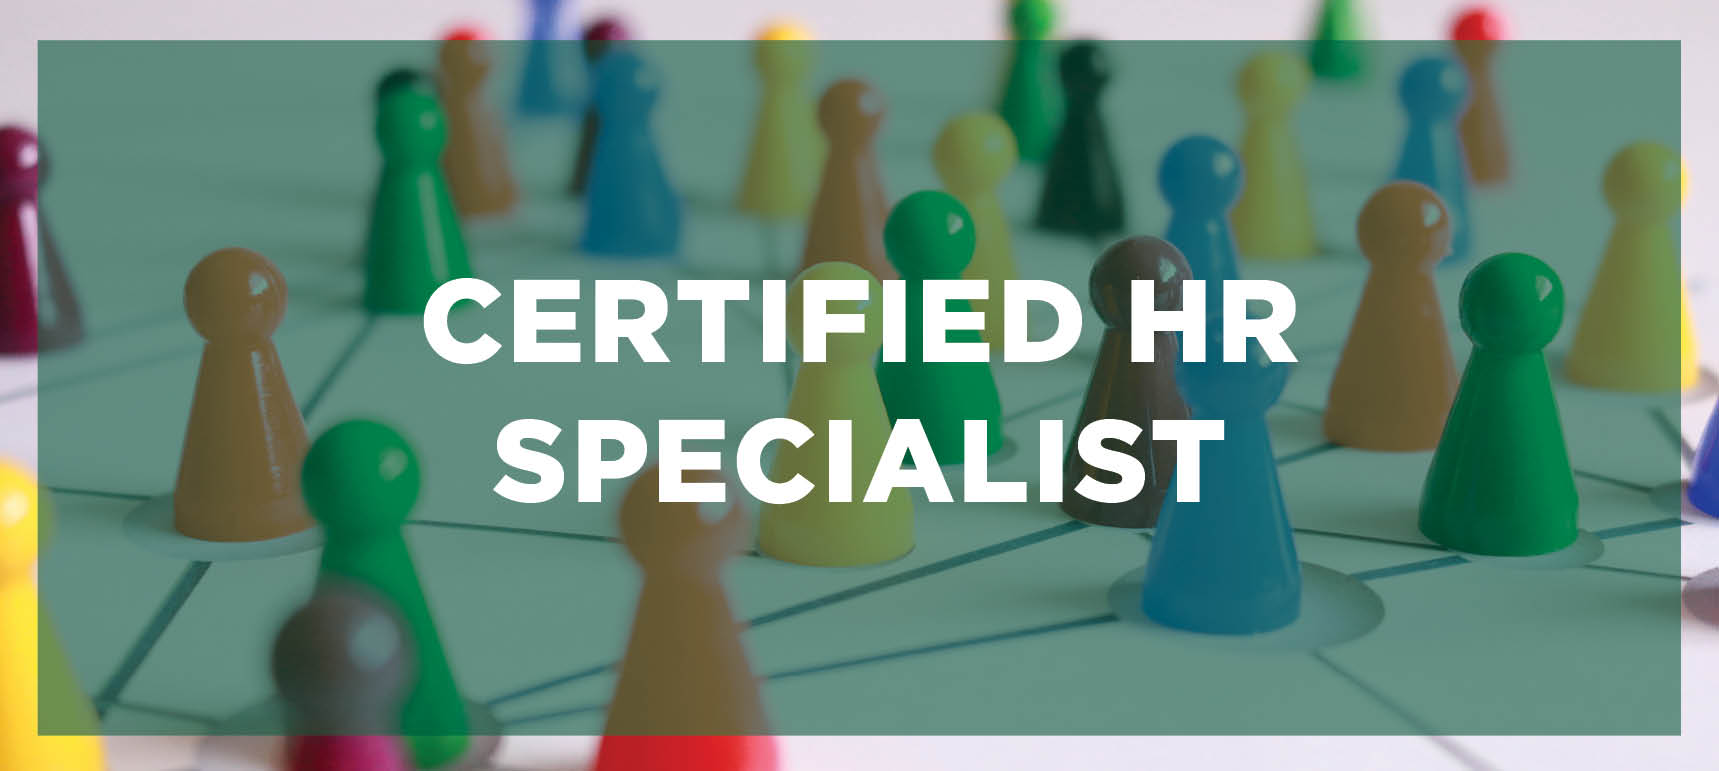 Certified HR Specialist